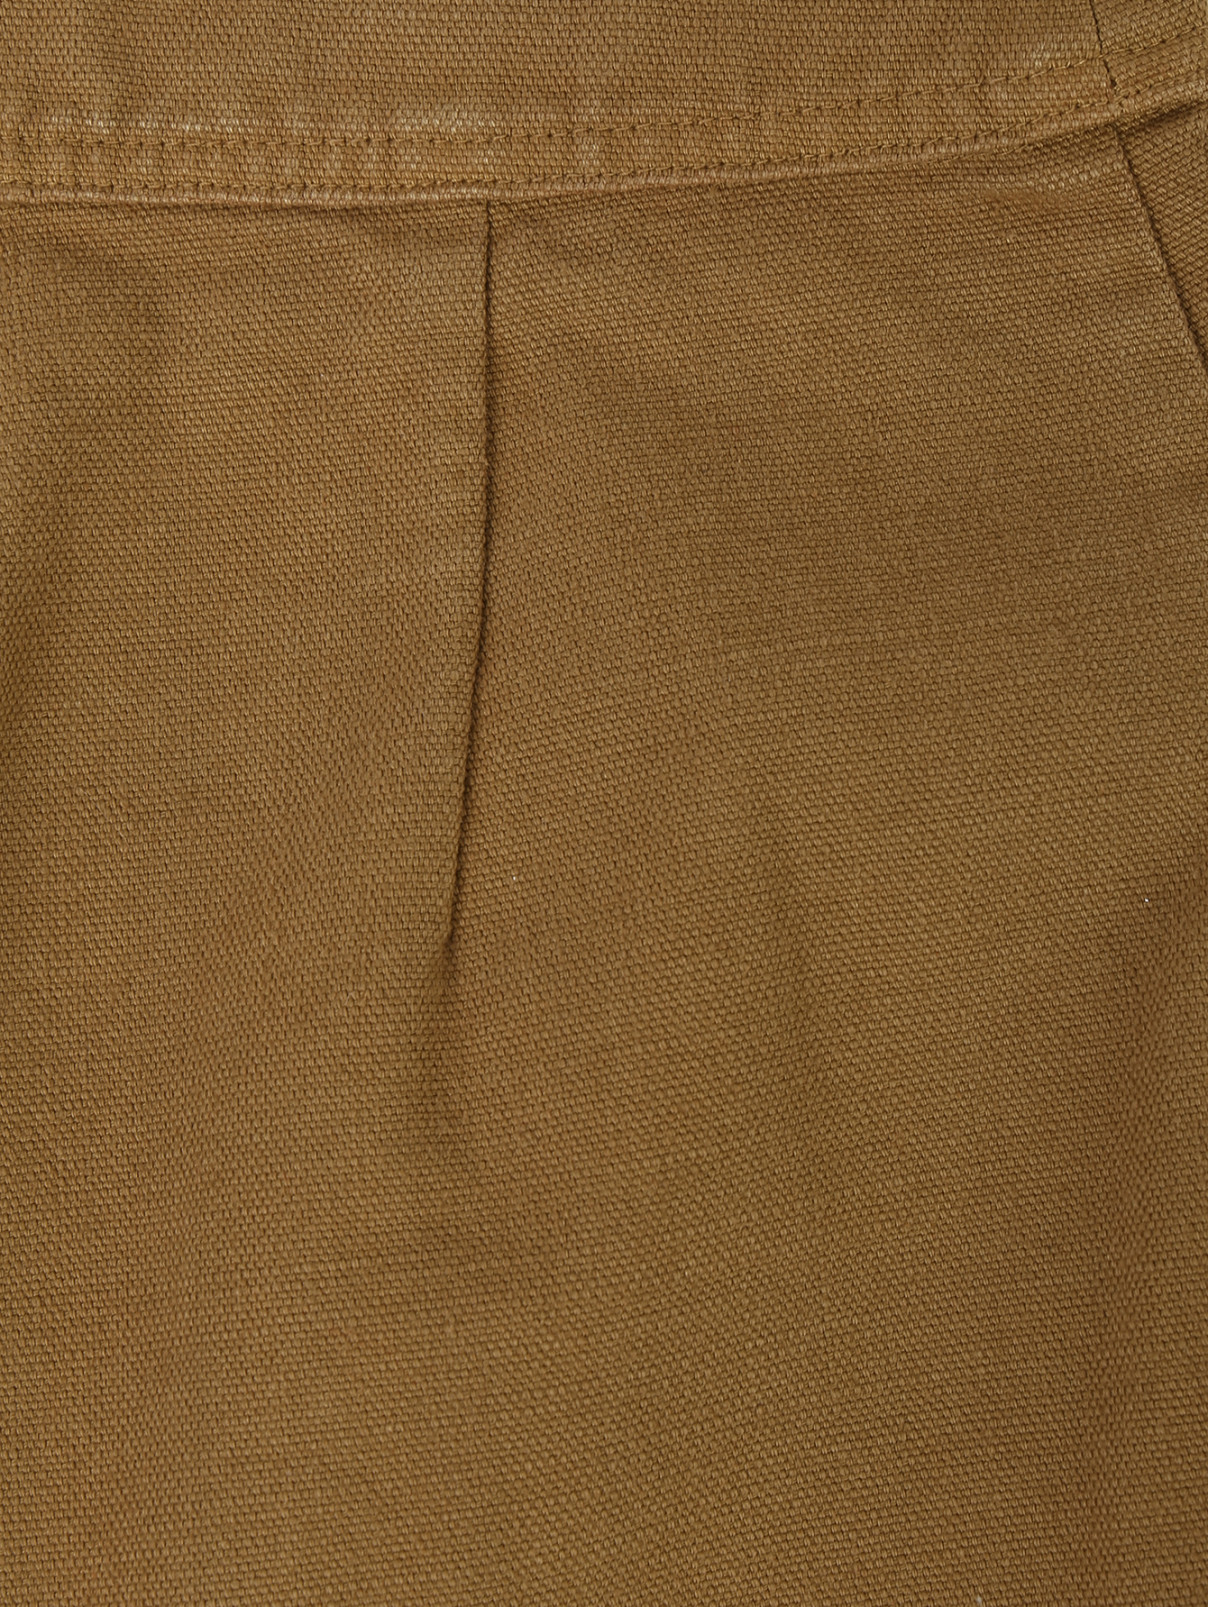 Юбка-мини из хлопка с накладными карманами Isabel Marant  –  Деталь  – Цвет:  Бежевый